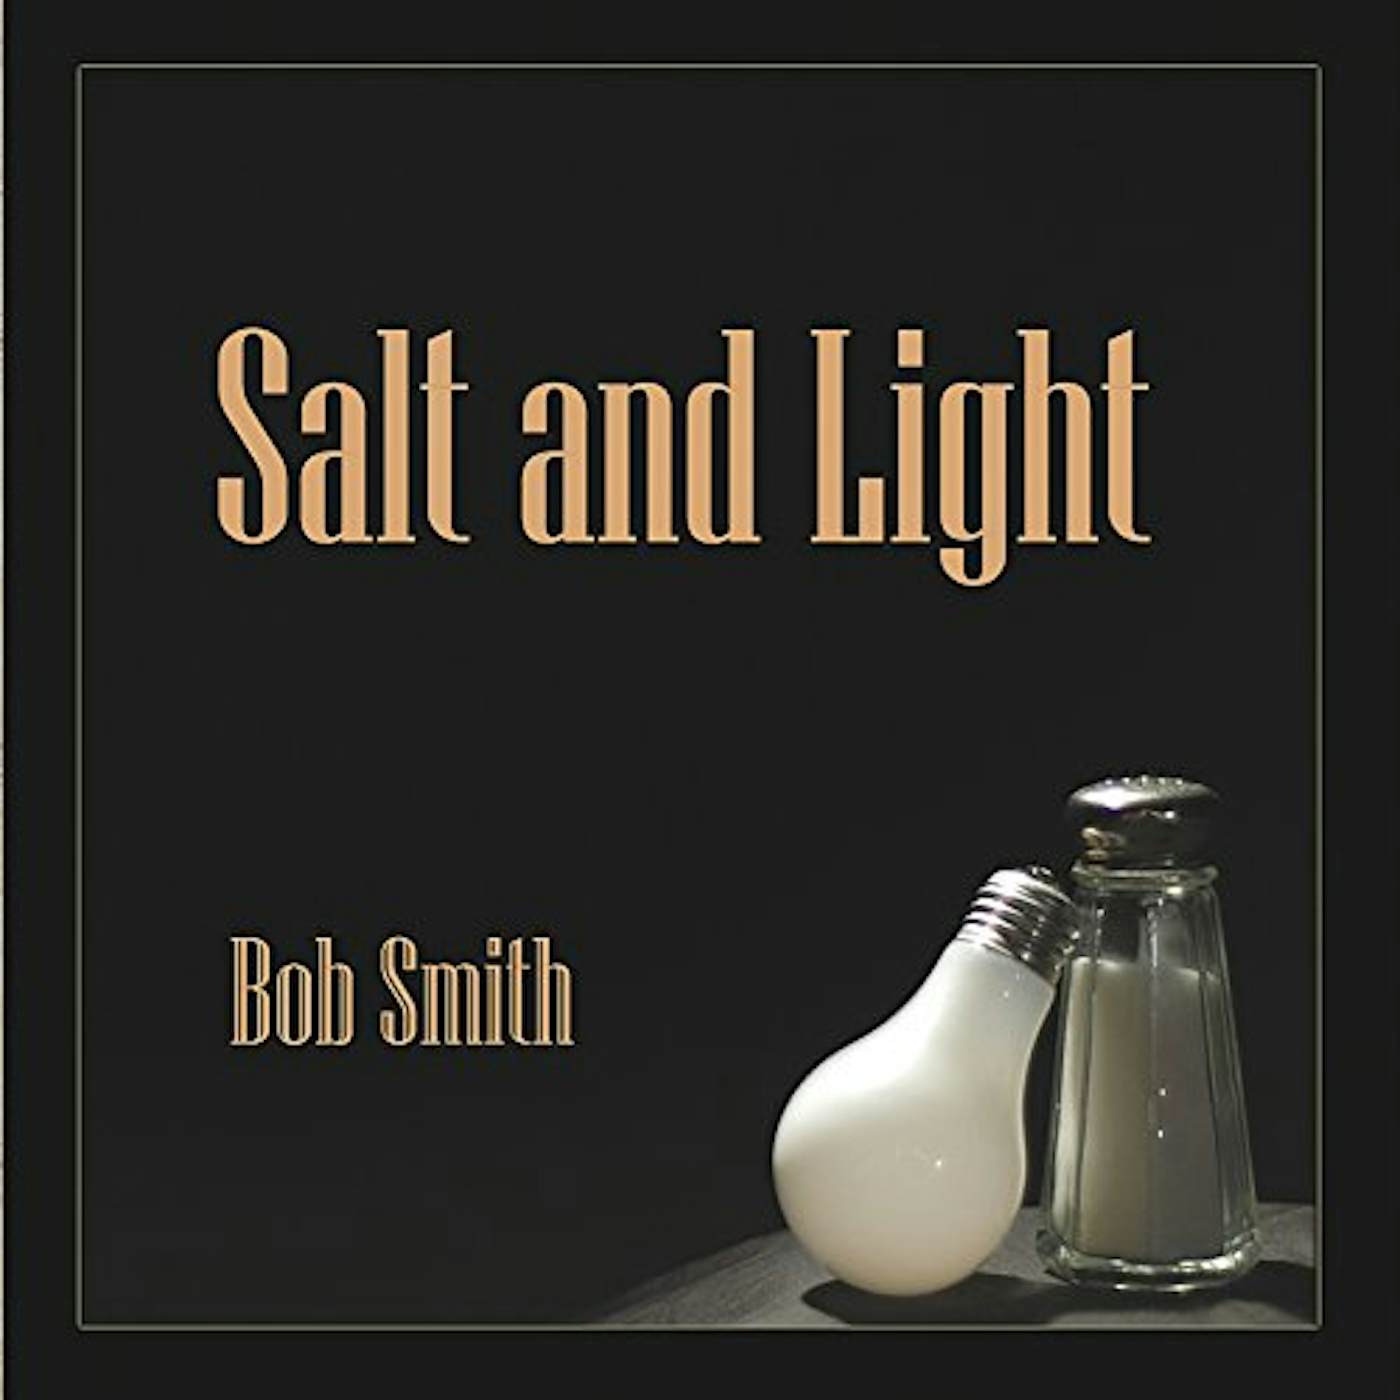 Bob Smith SALT AND LIGHT CD